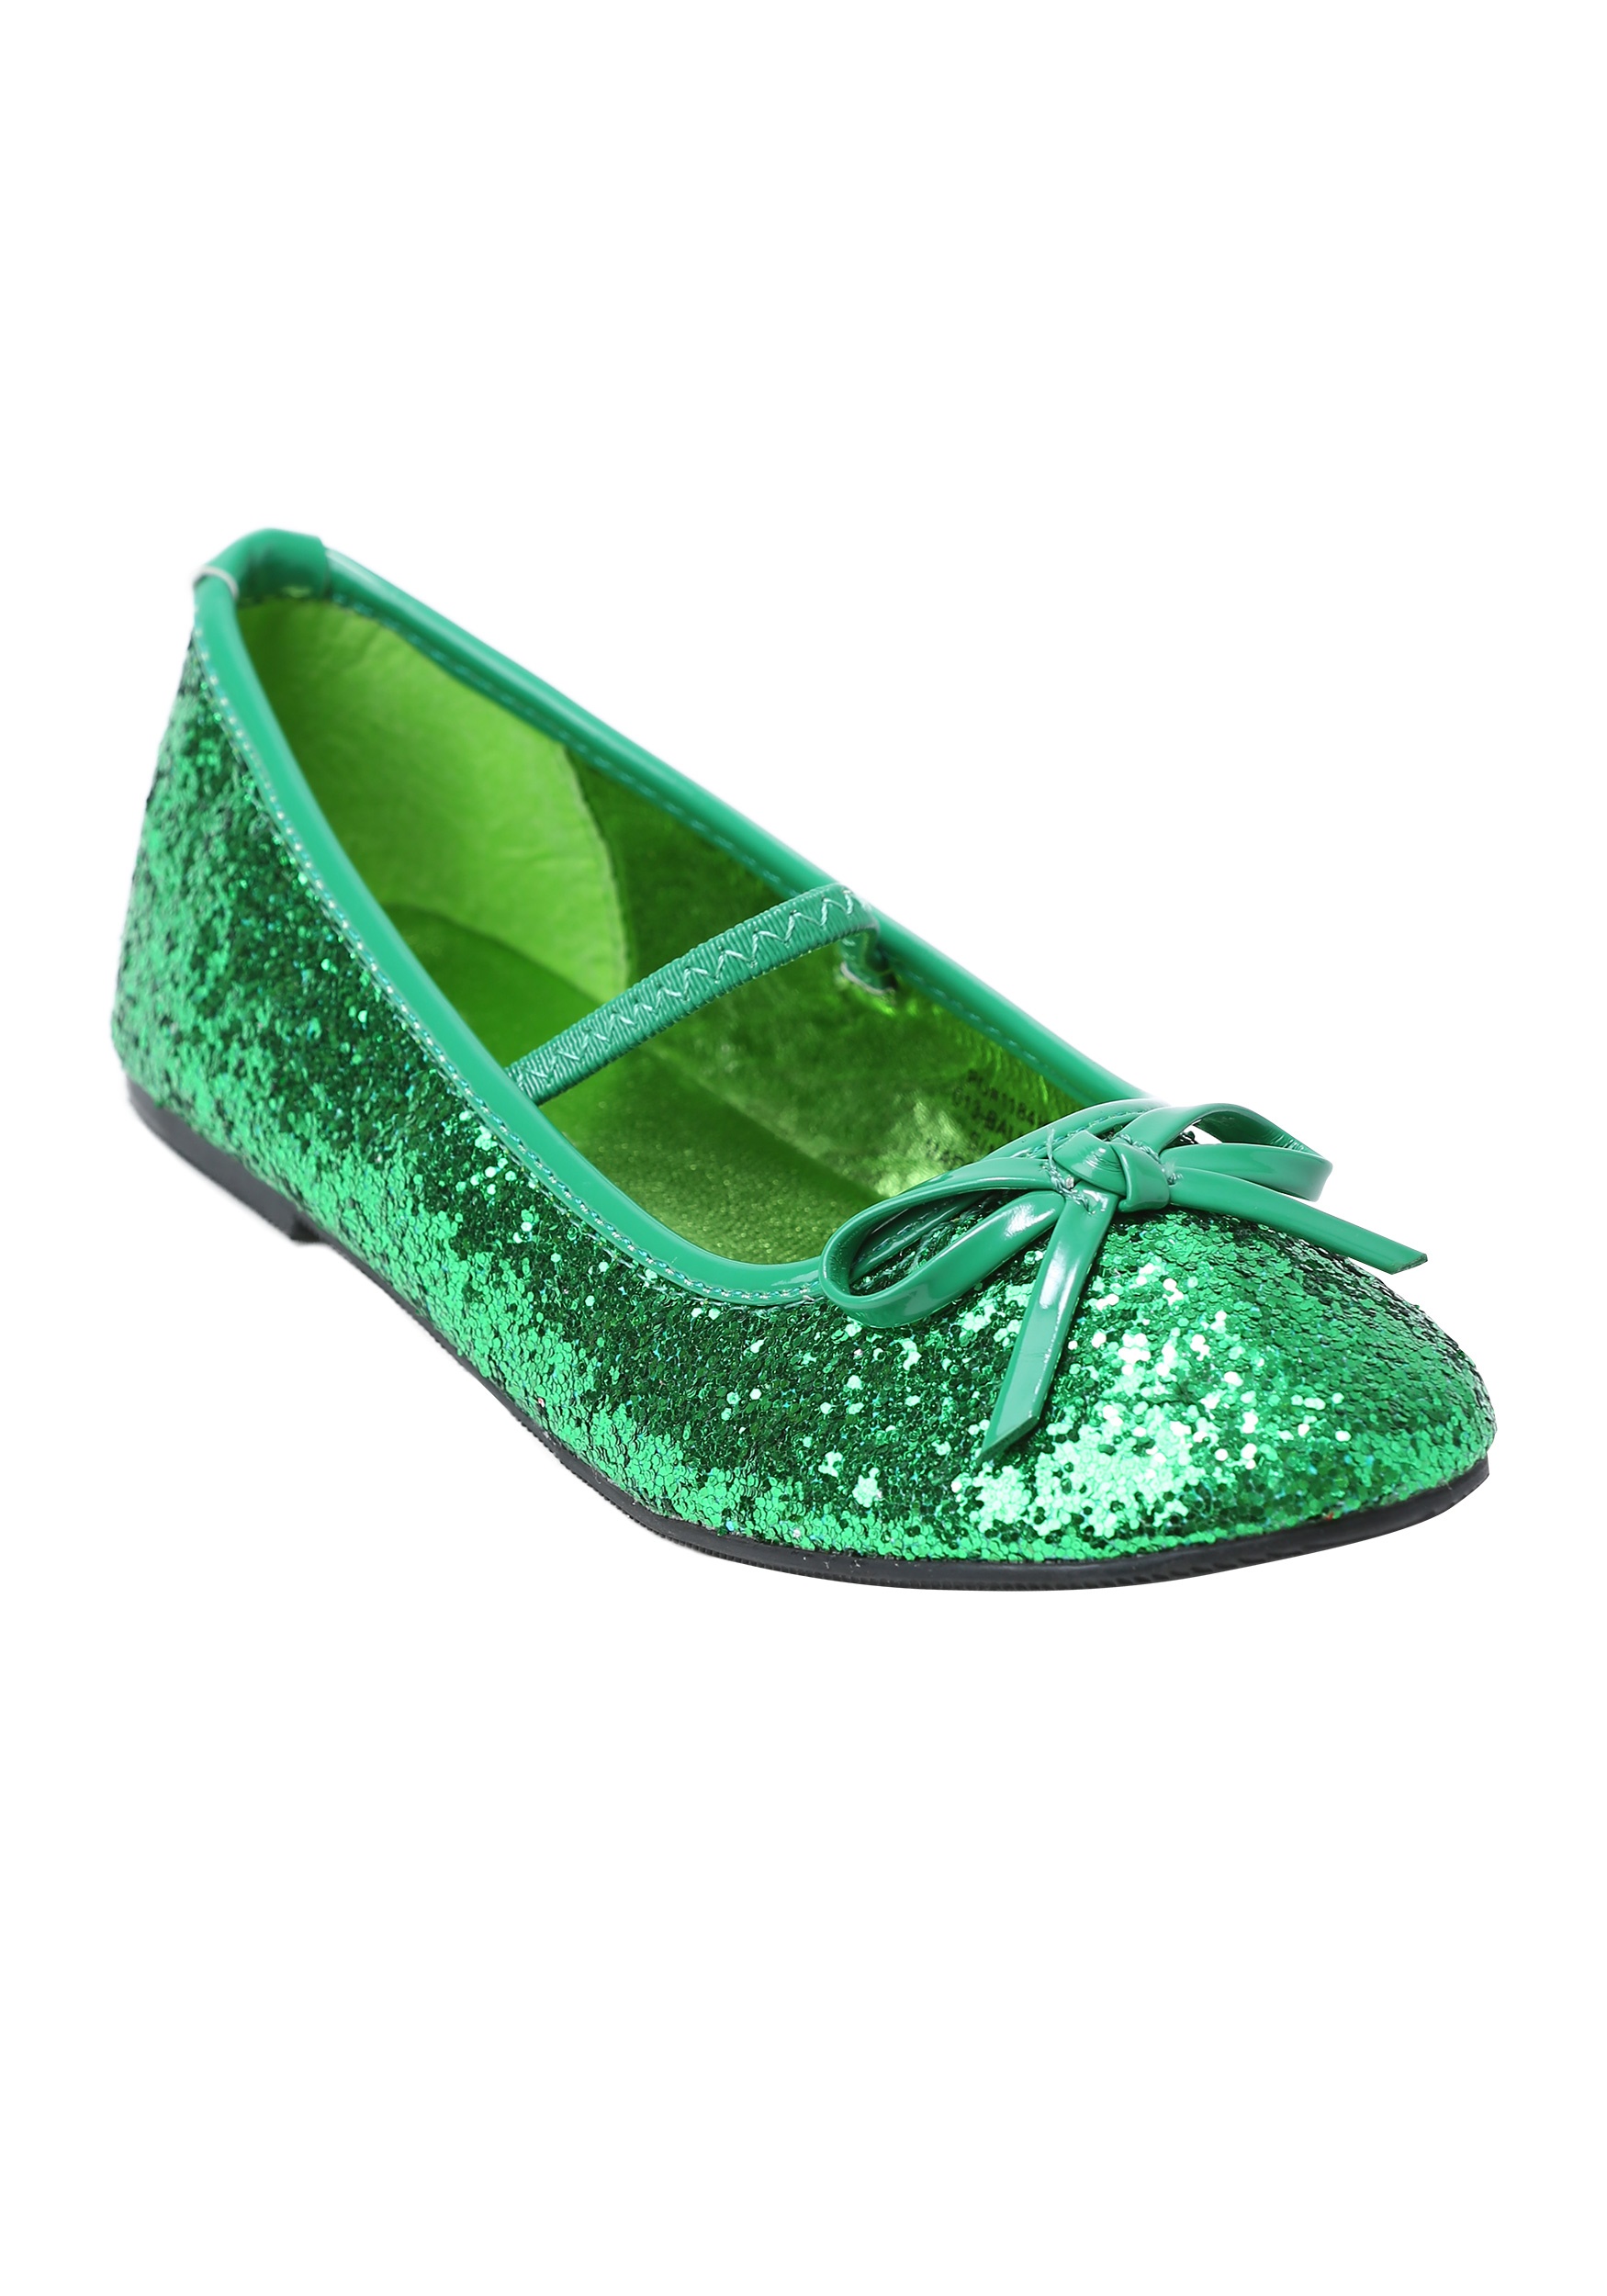 girls green shoes